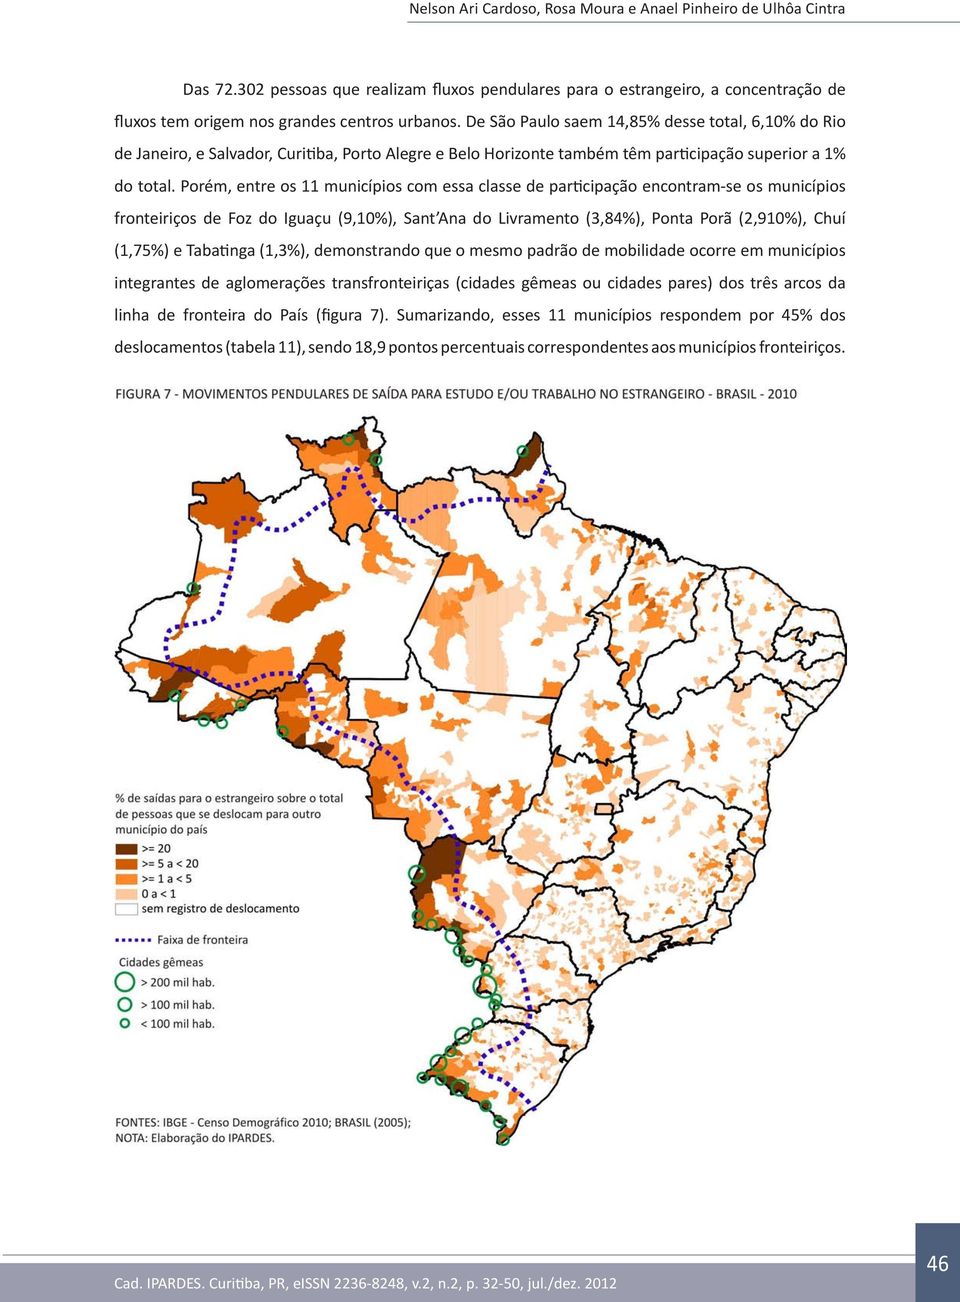 Porém, entre os 11 municípios com essa classe de participação encontram-se os municípios fronteiriços de Foz do Iguaçu (9,10%), Sant Ana do Livramento (3,84%), Ponta Porã (2,910%), Chuí (1,75%) e